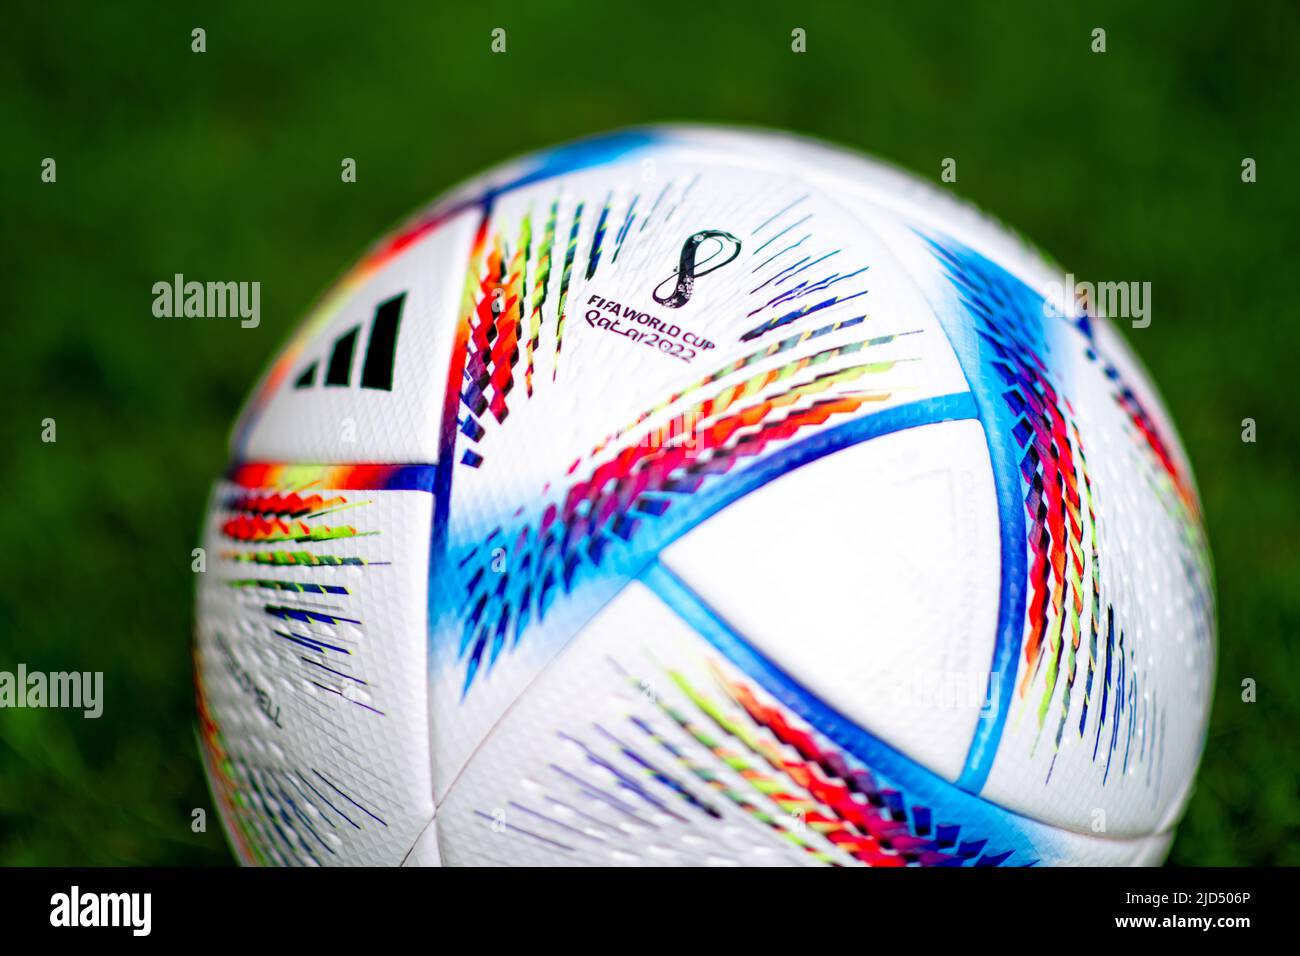 Adidas Qatar 2022 Copa Mundial de la FIFA Al Rihla Balón Oficial del Partido Foto de stock